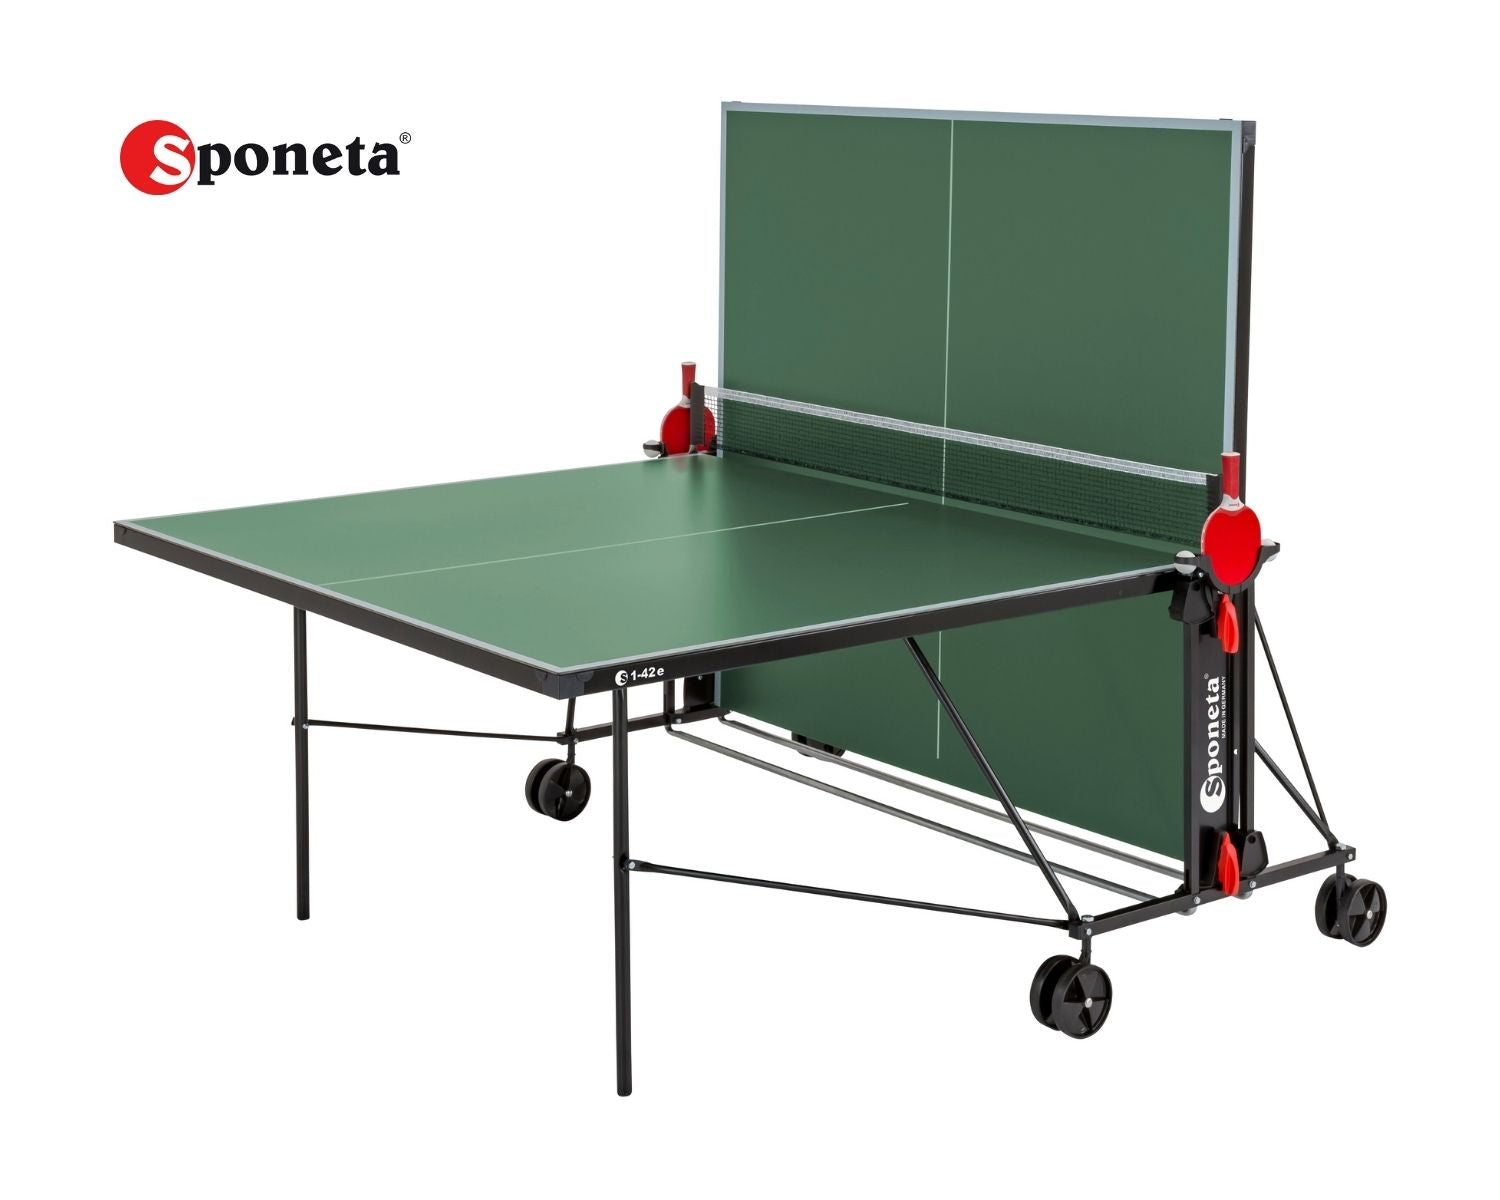 Sponeta Tavolo da Ping Pong Outdoor S 1-42 e